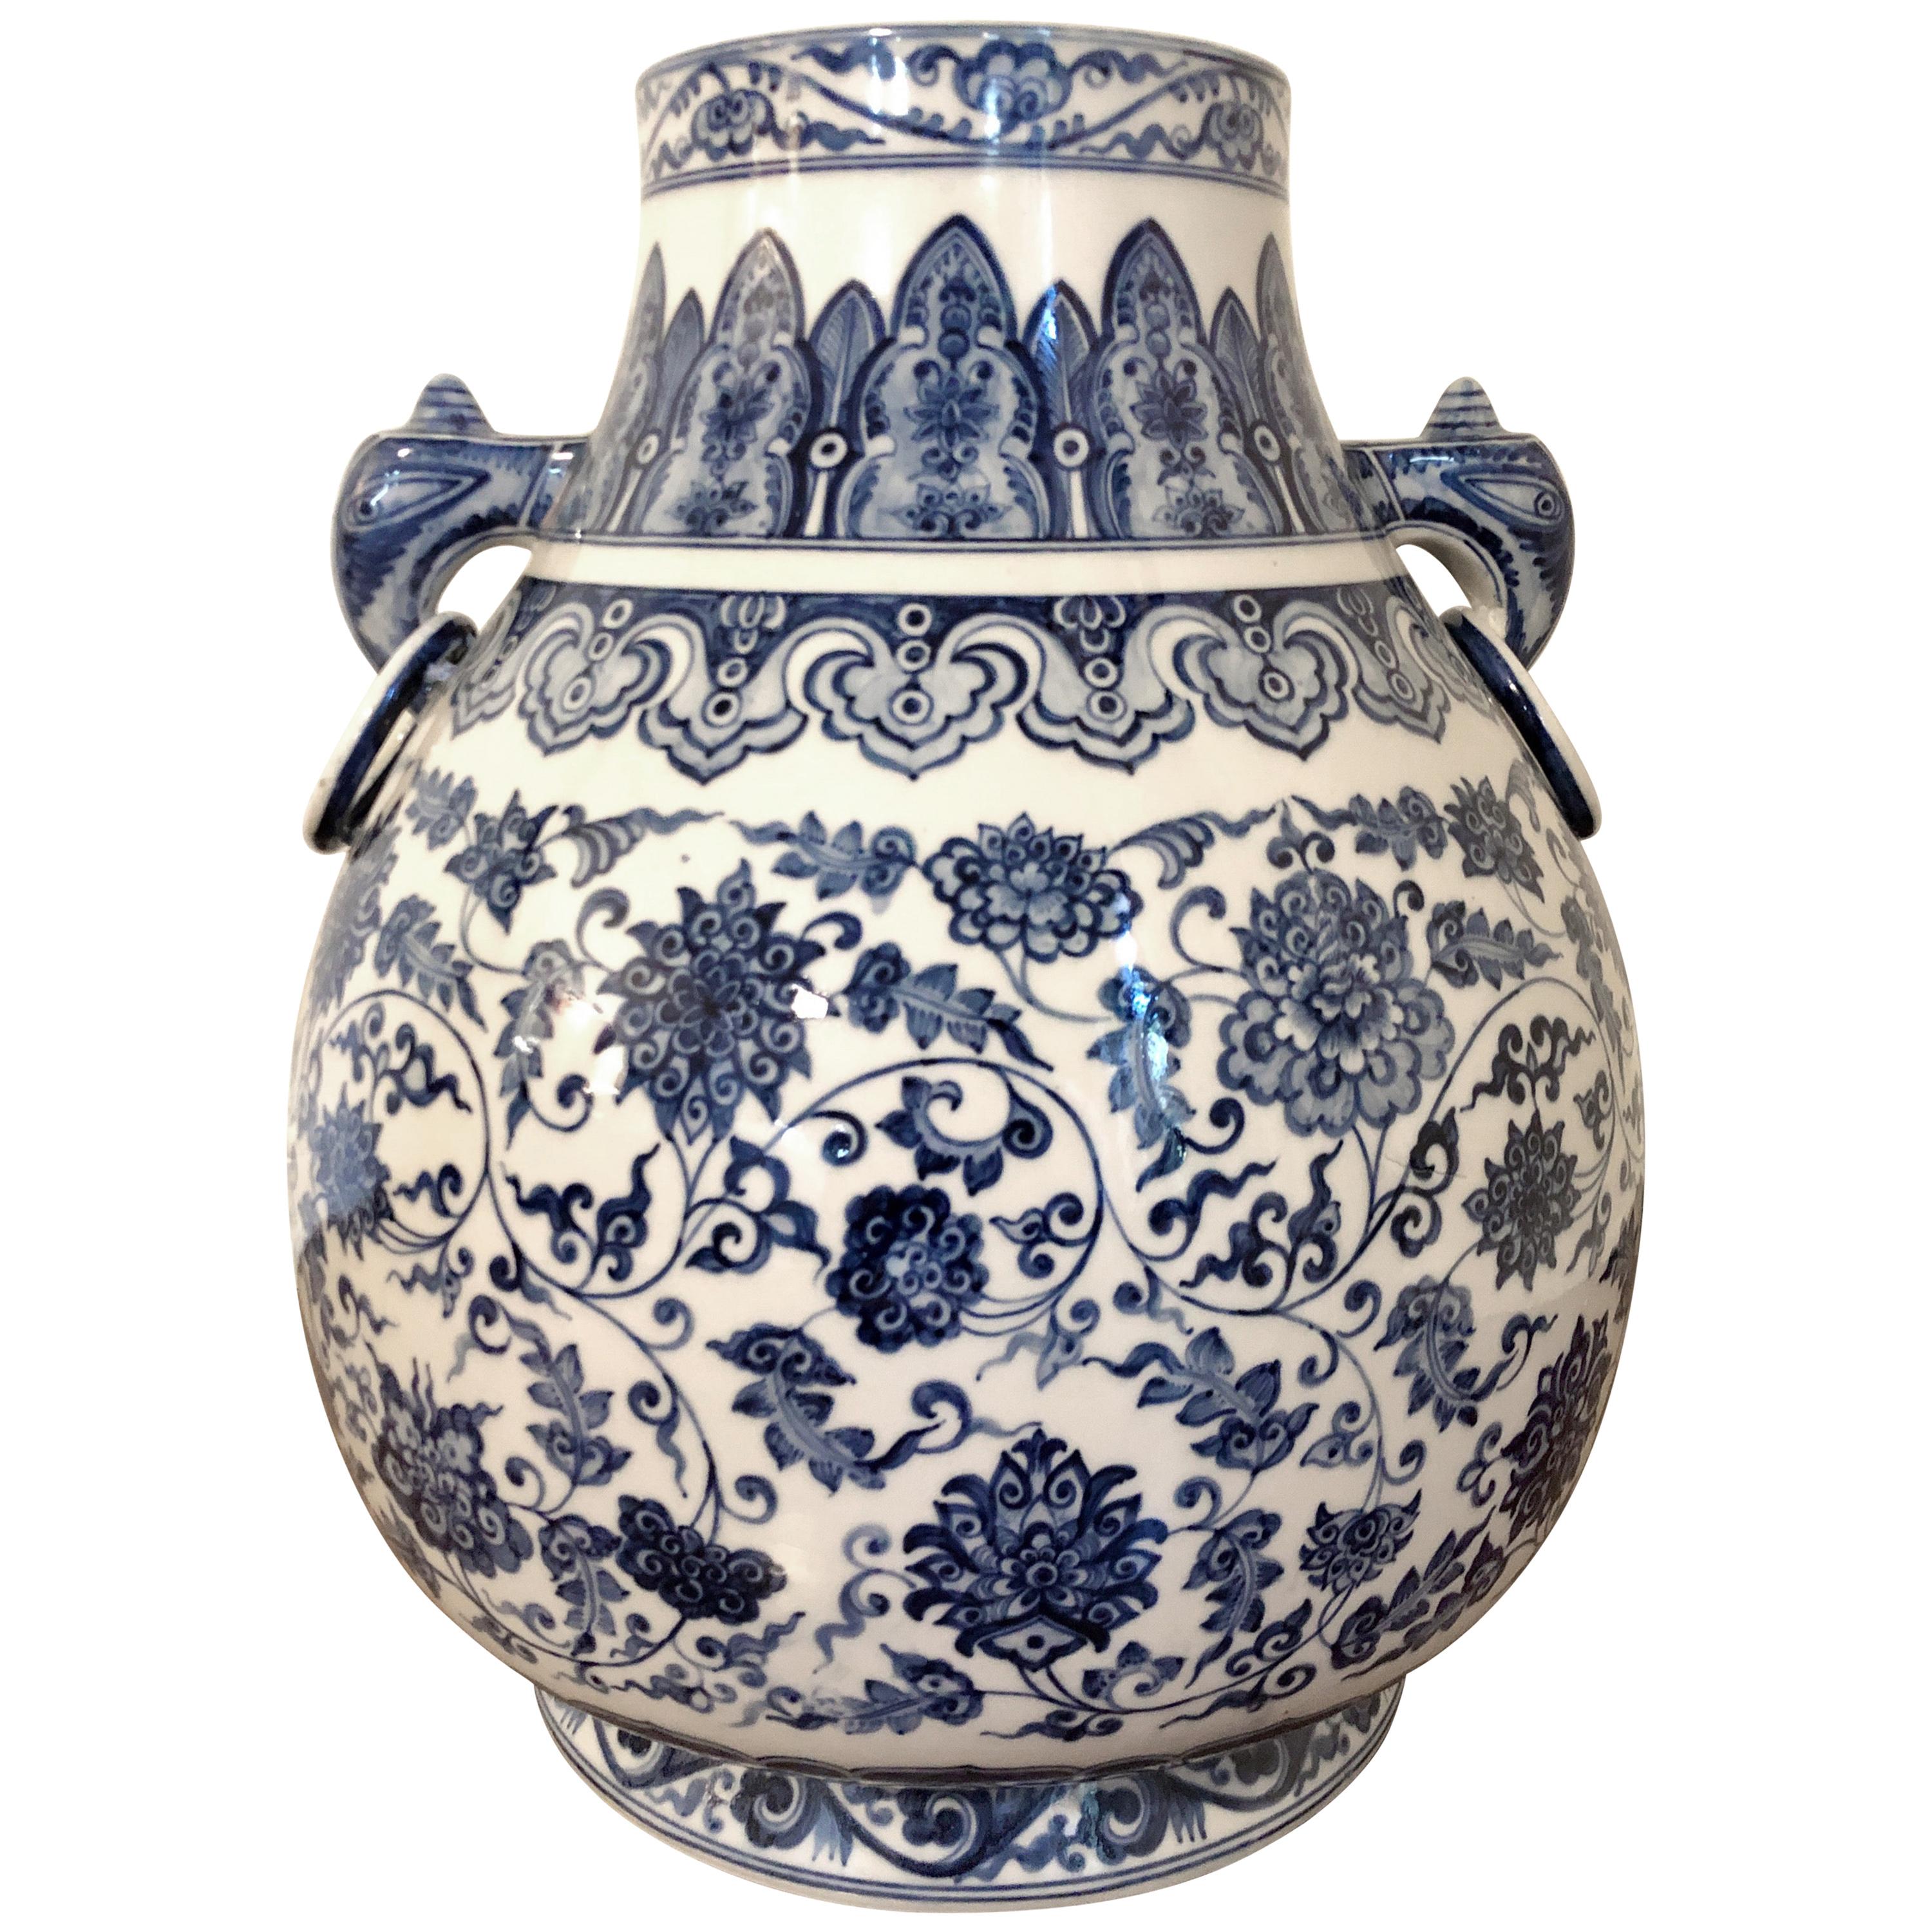 Color : A, Size : D24cmxH46cm YUBIN Vases for Decor Blue and White Ceramic Flower Vase China Ming Style Antique Vase Table Centerpieces Vase Blue and White Porcelain Temple Jar Vase-a D24cmxh46cm 